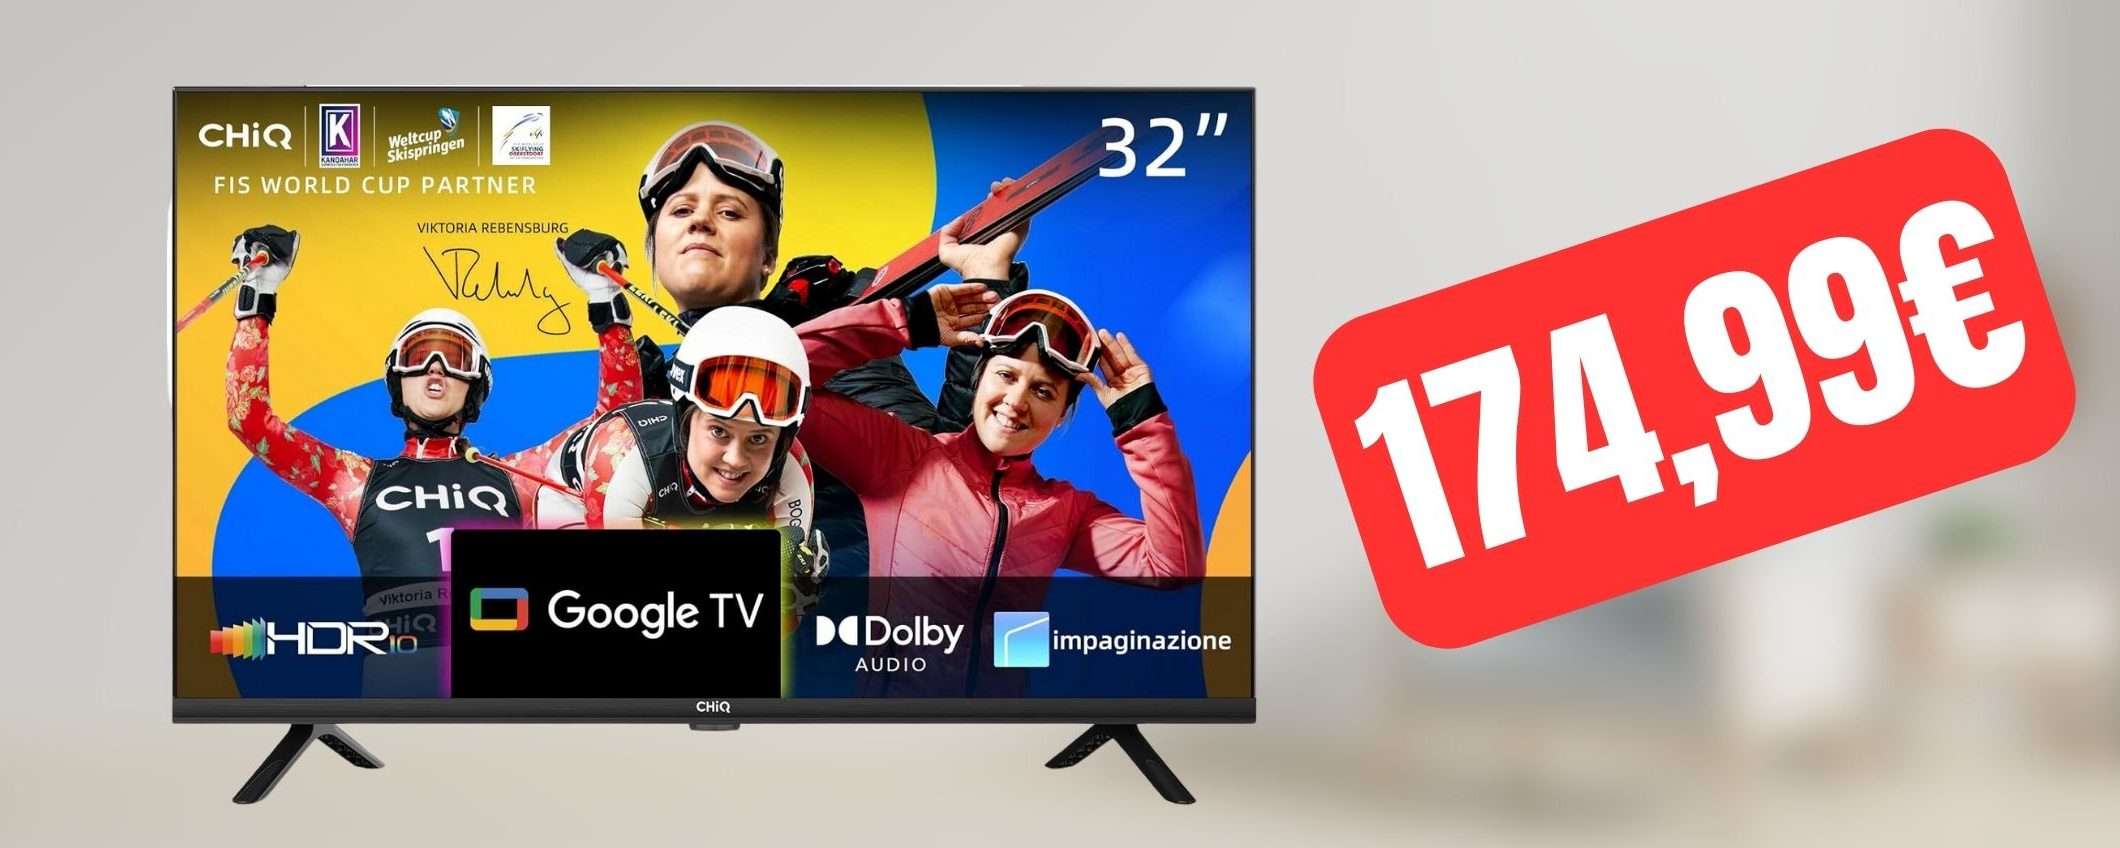 Solo 174,99€ per questa smart TV da 32 pollici con Google TV